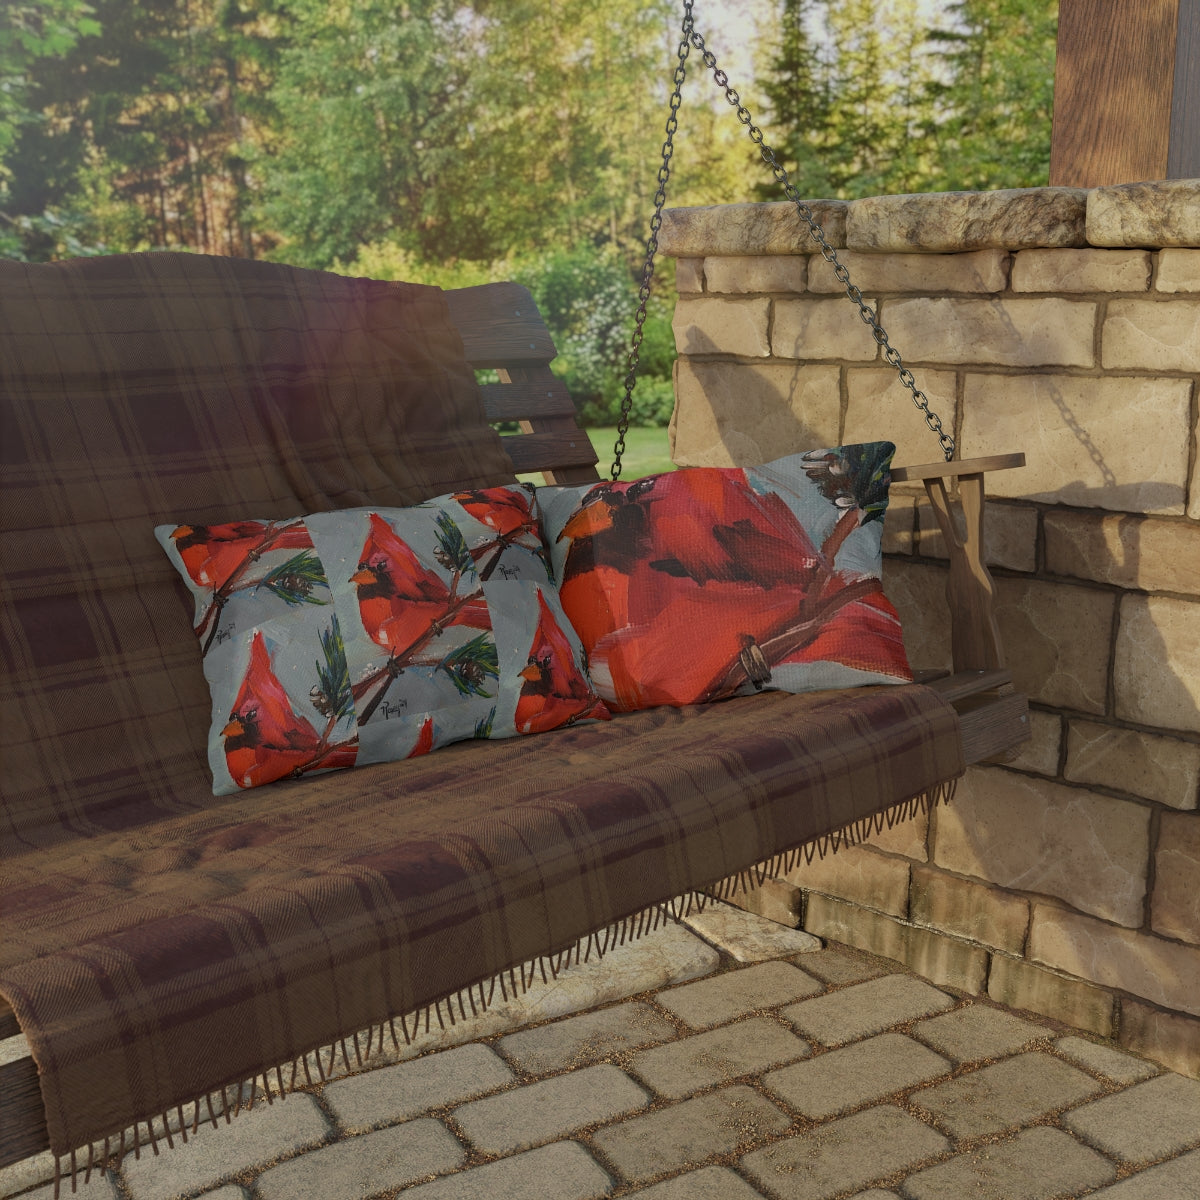 Cardinal Bird Outdoor Pillows